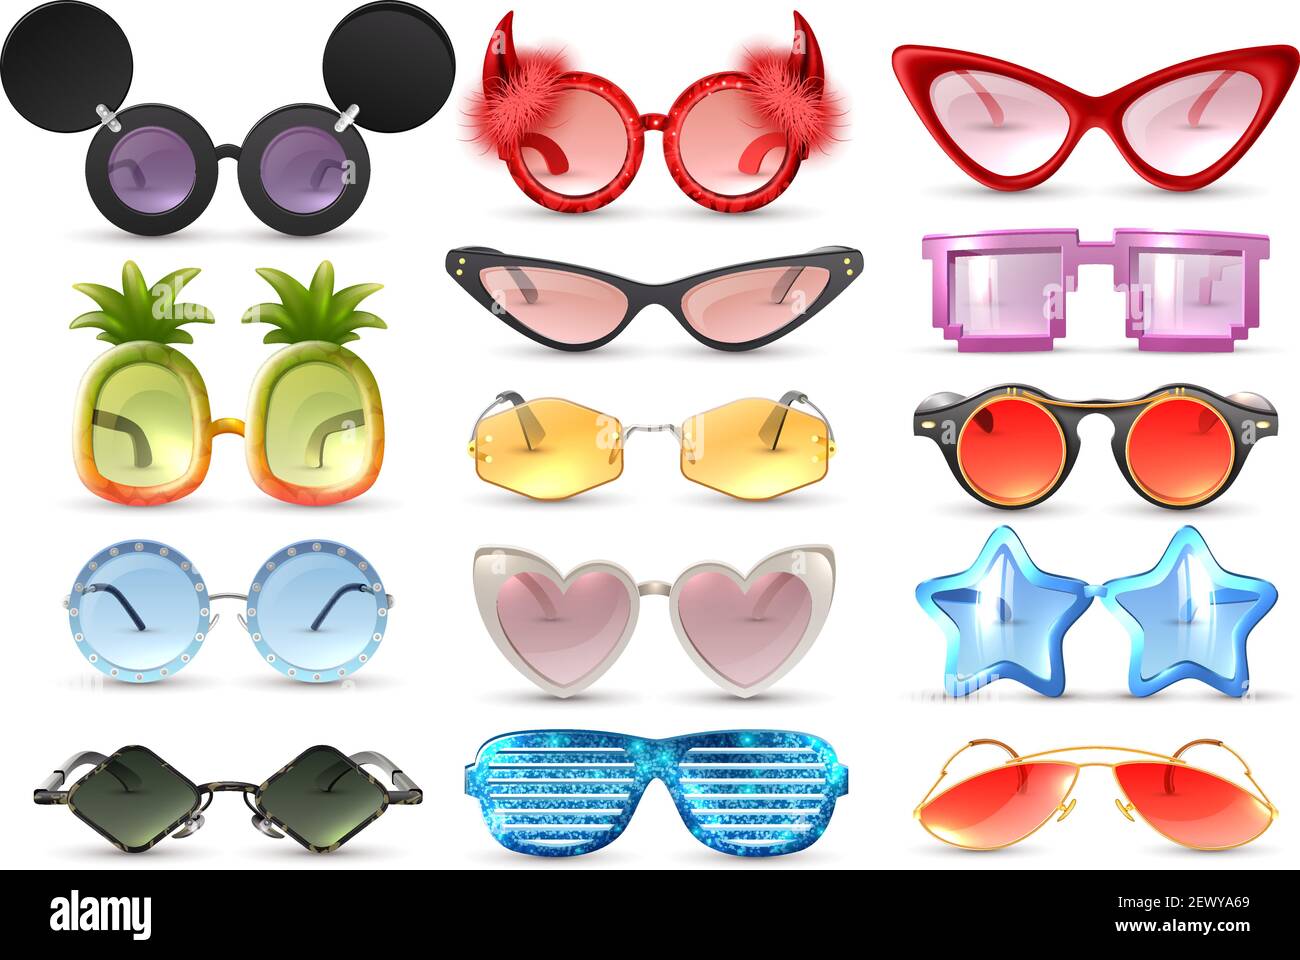 Karneval Party Maskerade Kostüm Brille Herz Stern Katze Auge geformt  Lustige Sonnenbrille realistische Satz isoliert Vektor Illustration  Stock-Vektorgrafik - Alamy